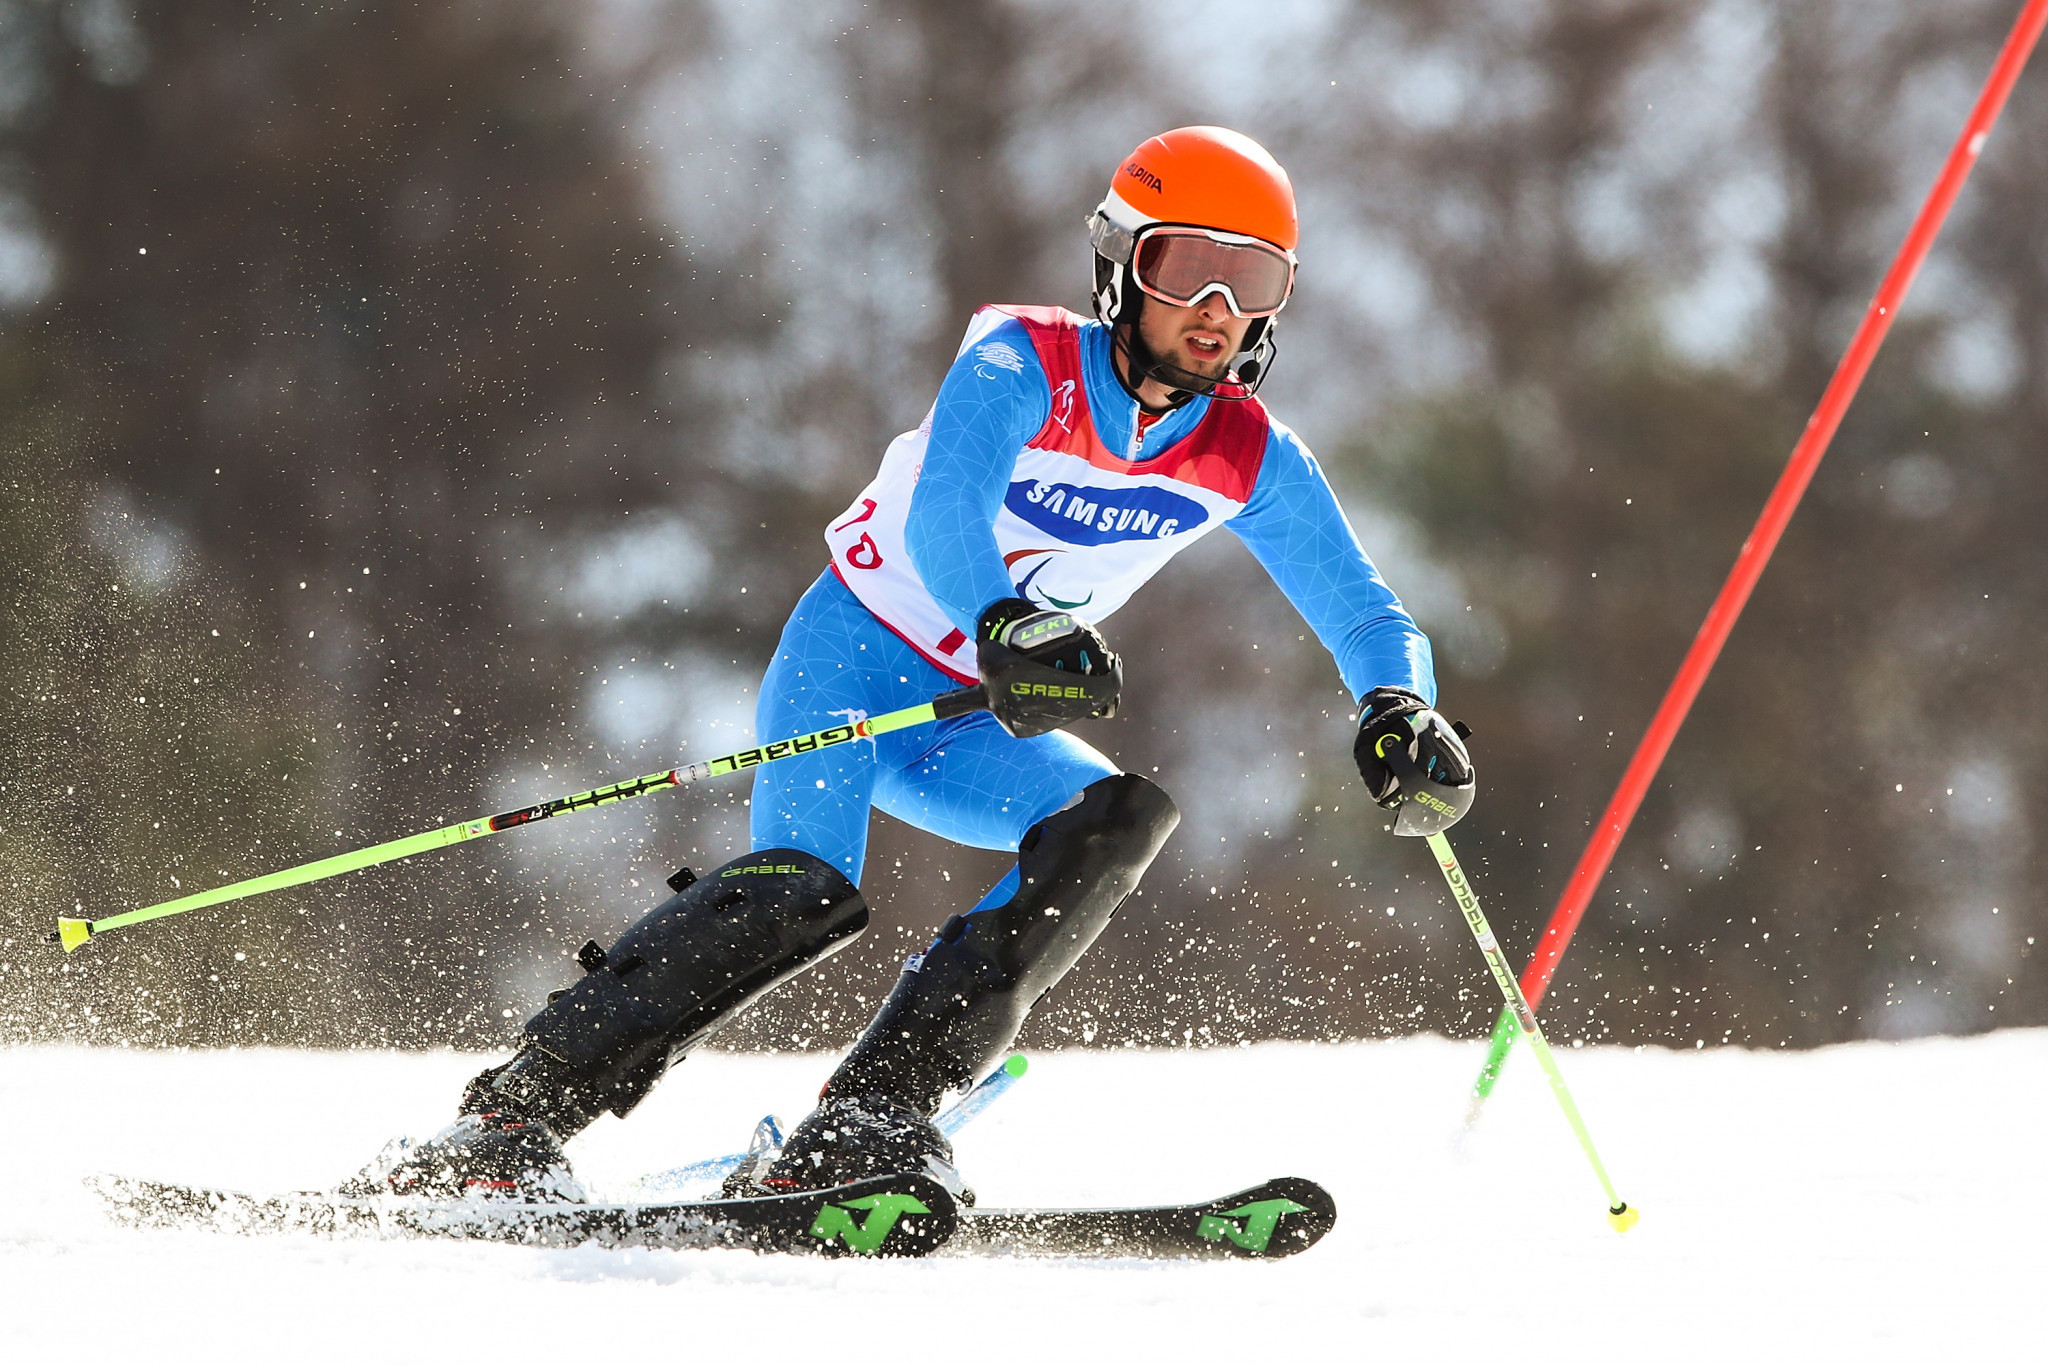 Voronchikhina edges out Bochet at World Para Alpine Skiing World Cup